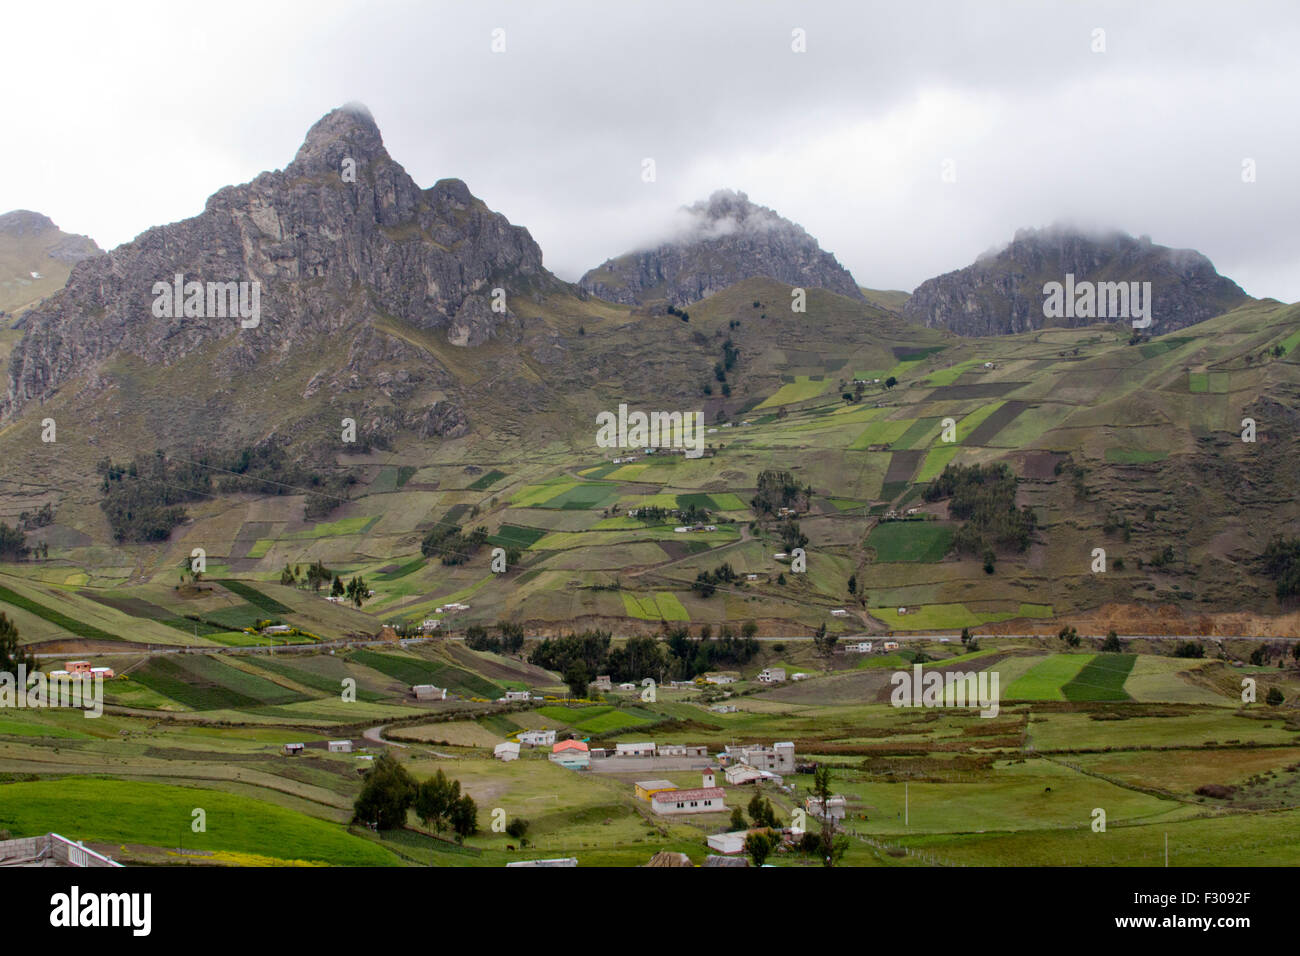 Indigenous farmlands in Andean mountains near Laguna Quilotoa, Ecuador. Stock Photo